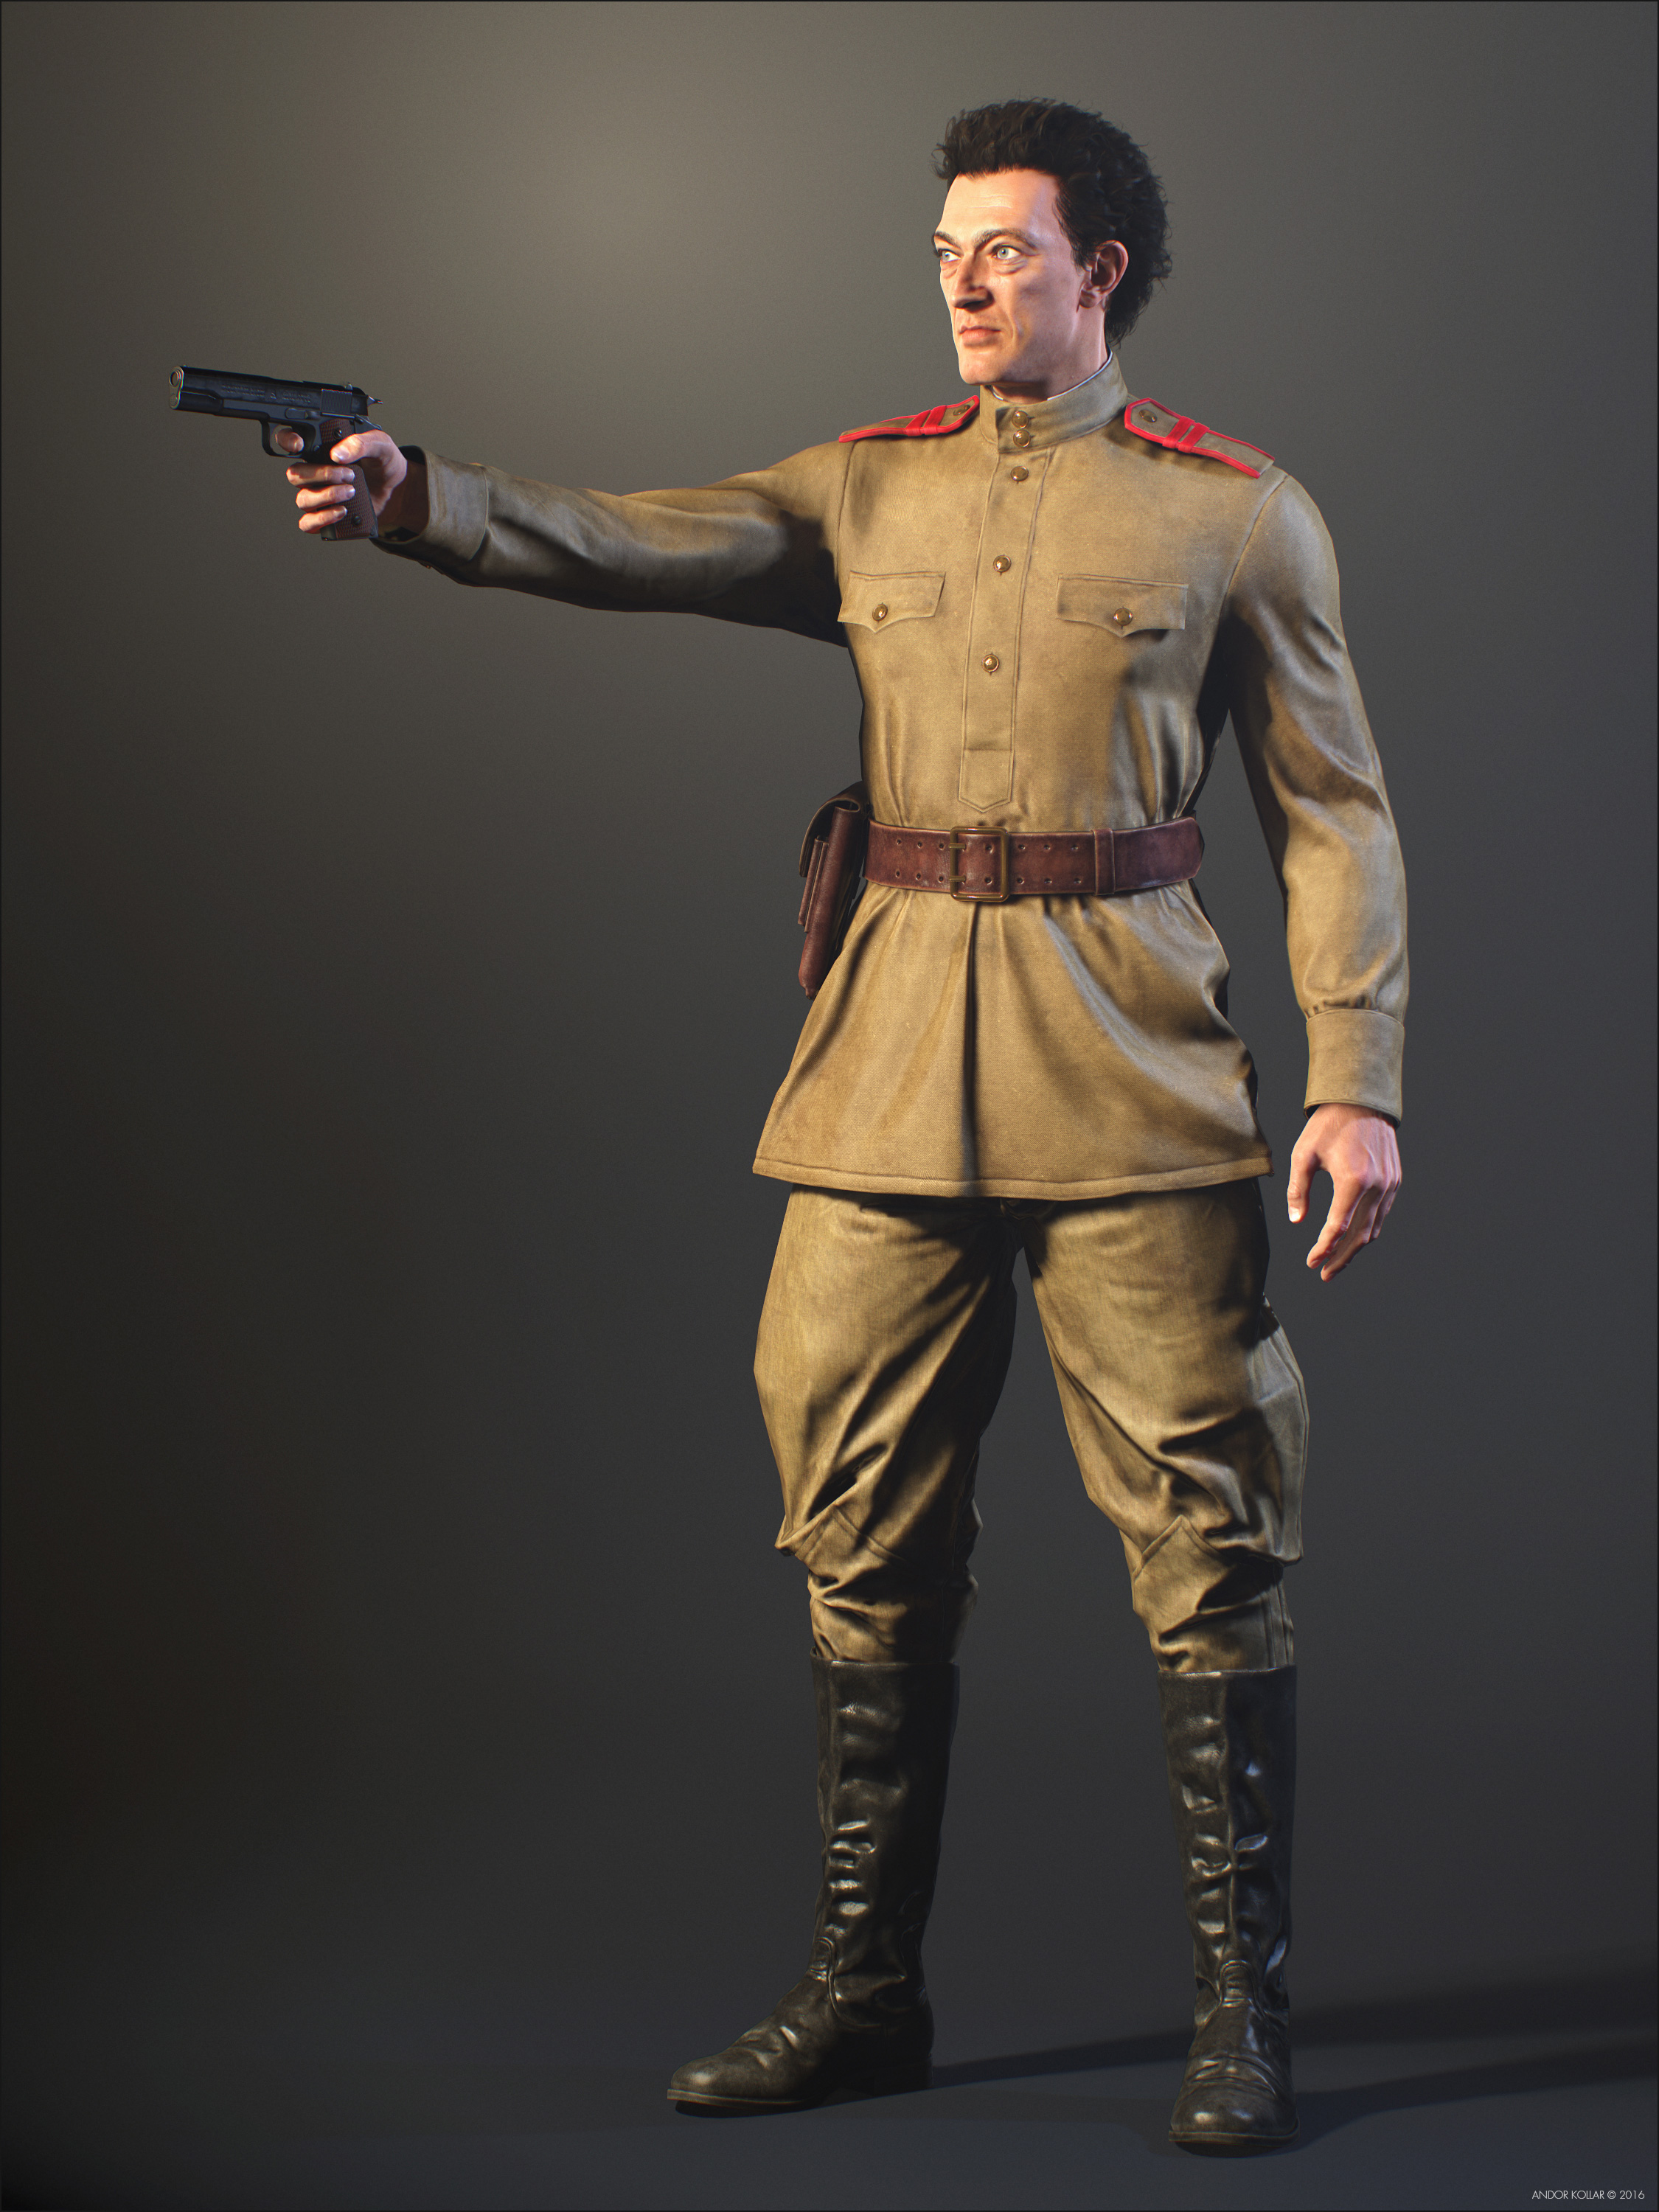 Vincent Cassel Soviet Soldier with a Gun in Hand